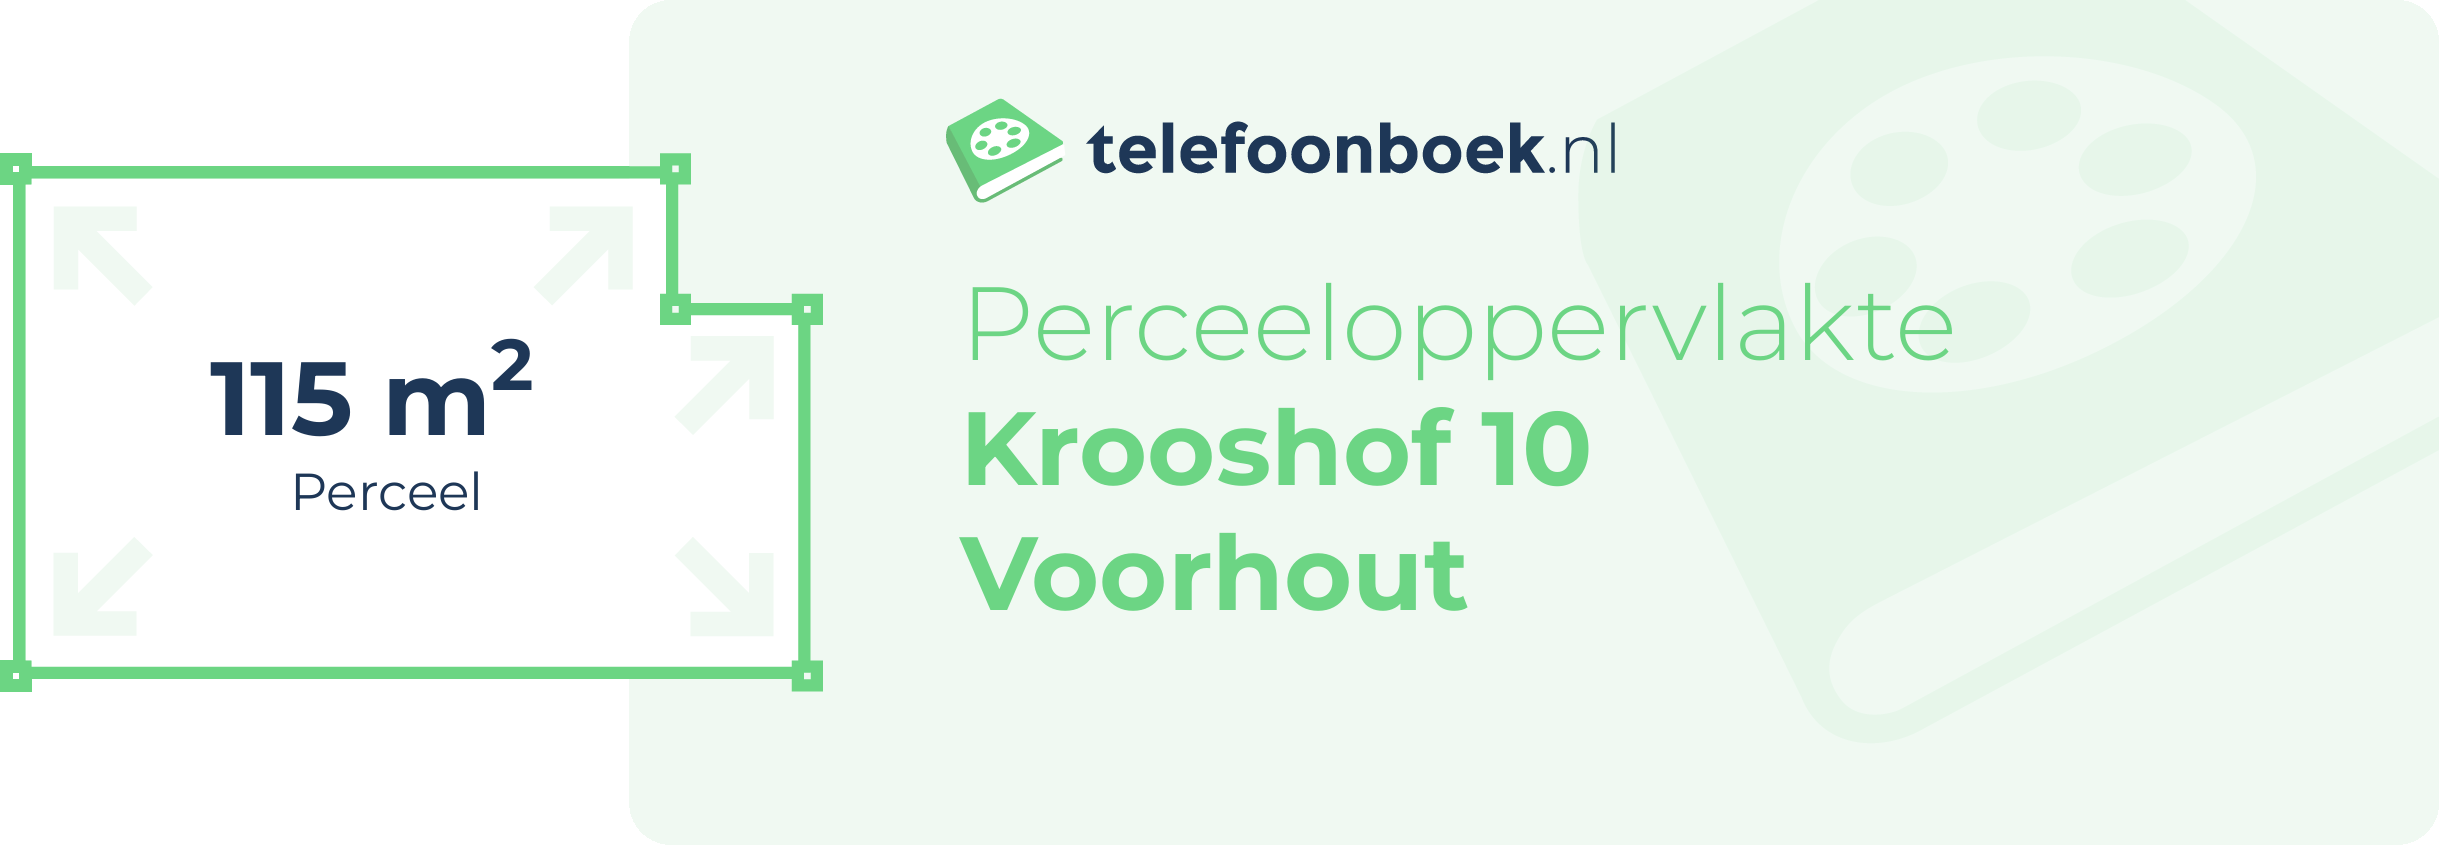 Perceeloppervlakte Krooshof 10 Voorhout